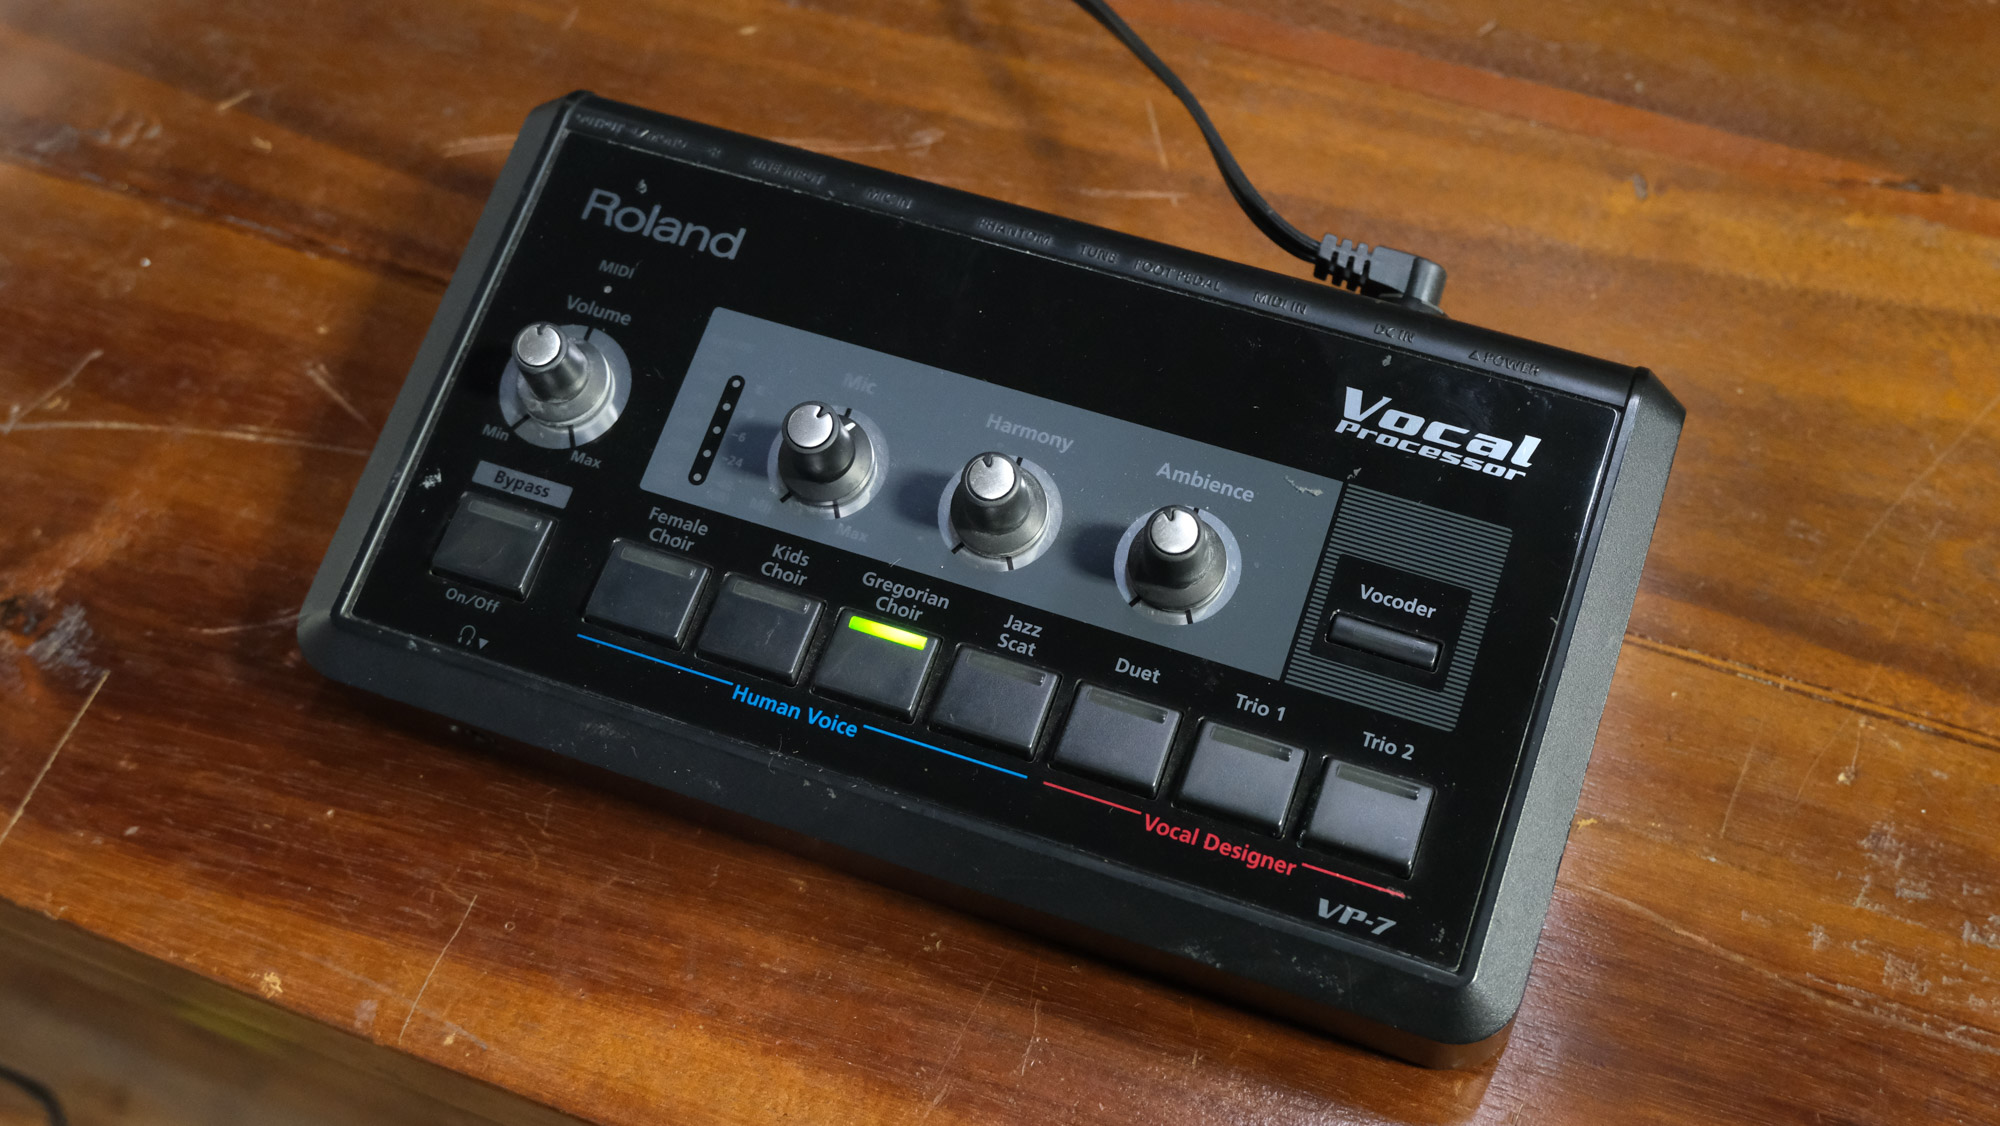 Roland VP-7 Vocal Processor